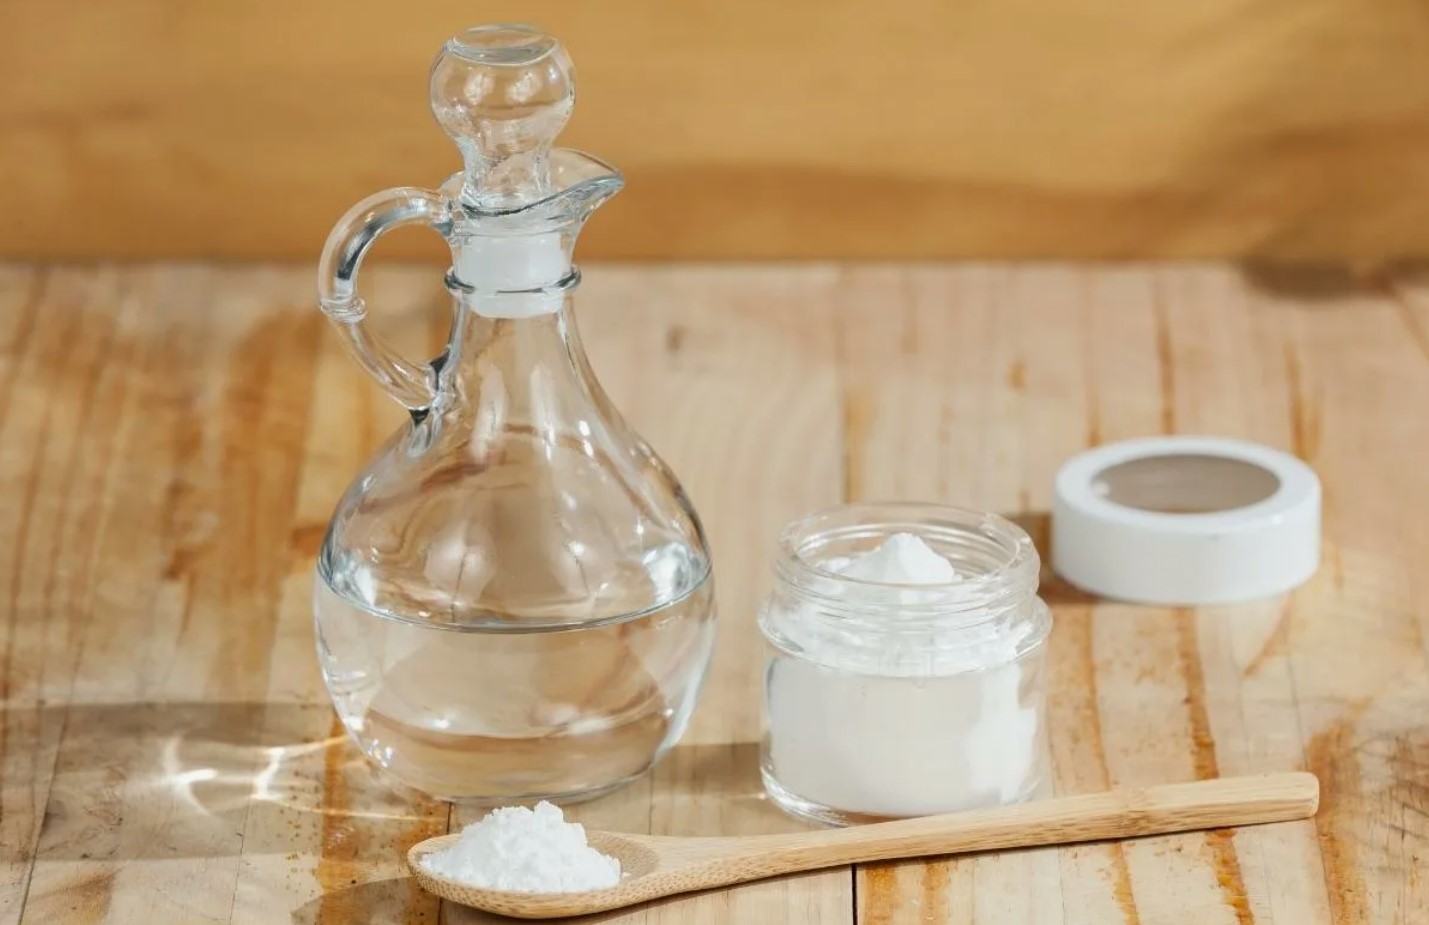 Bicarbonato y vinagre blanco: guía de limpieza casera efectiva